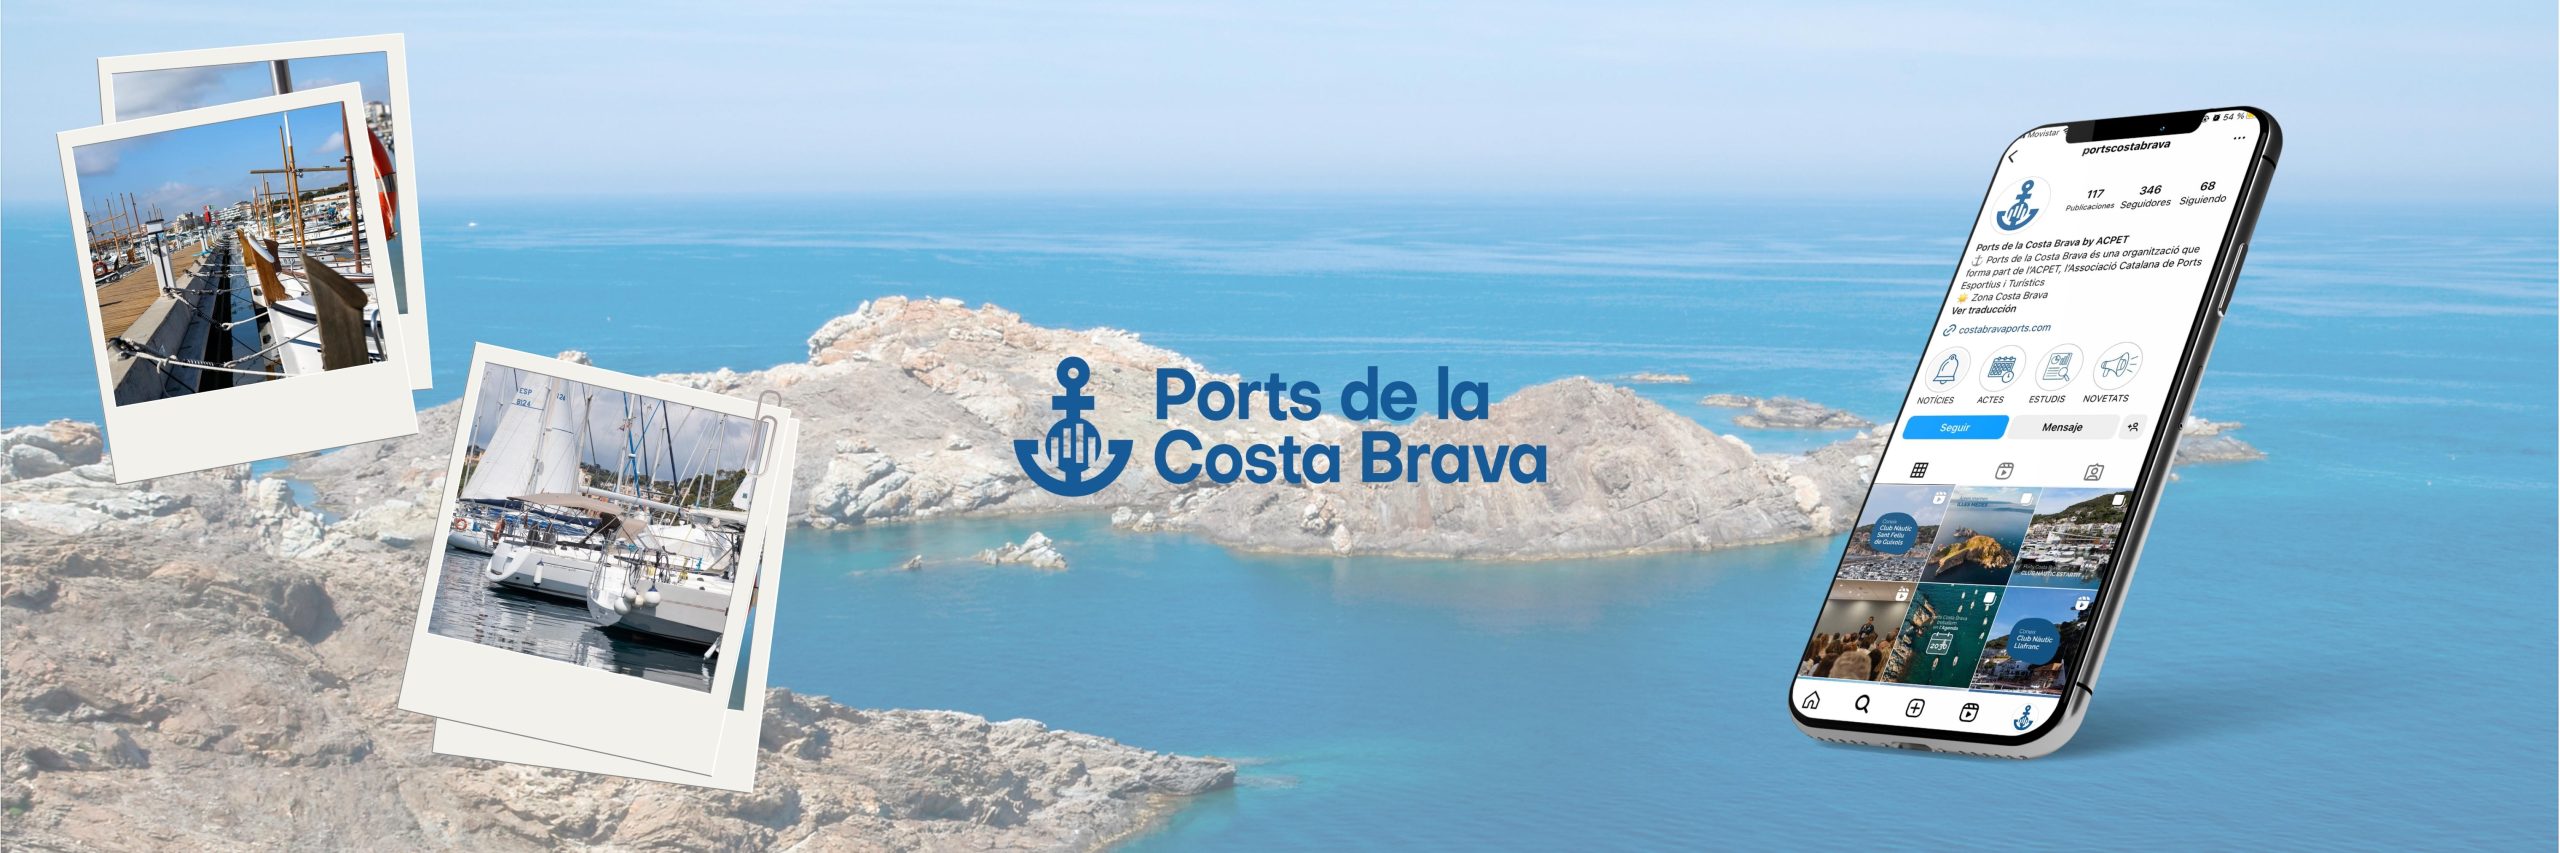 Ports de la Costa Brava - Fotografia, Comunicació audiovisual i xarxes.